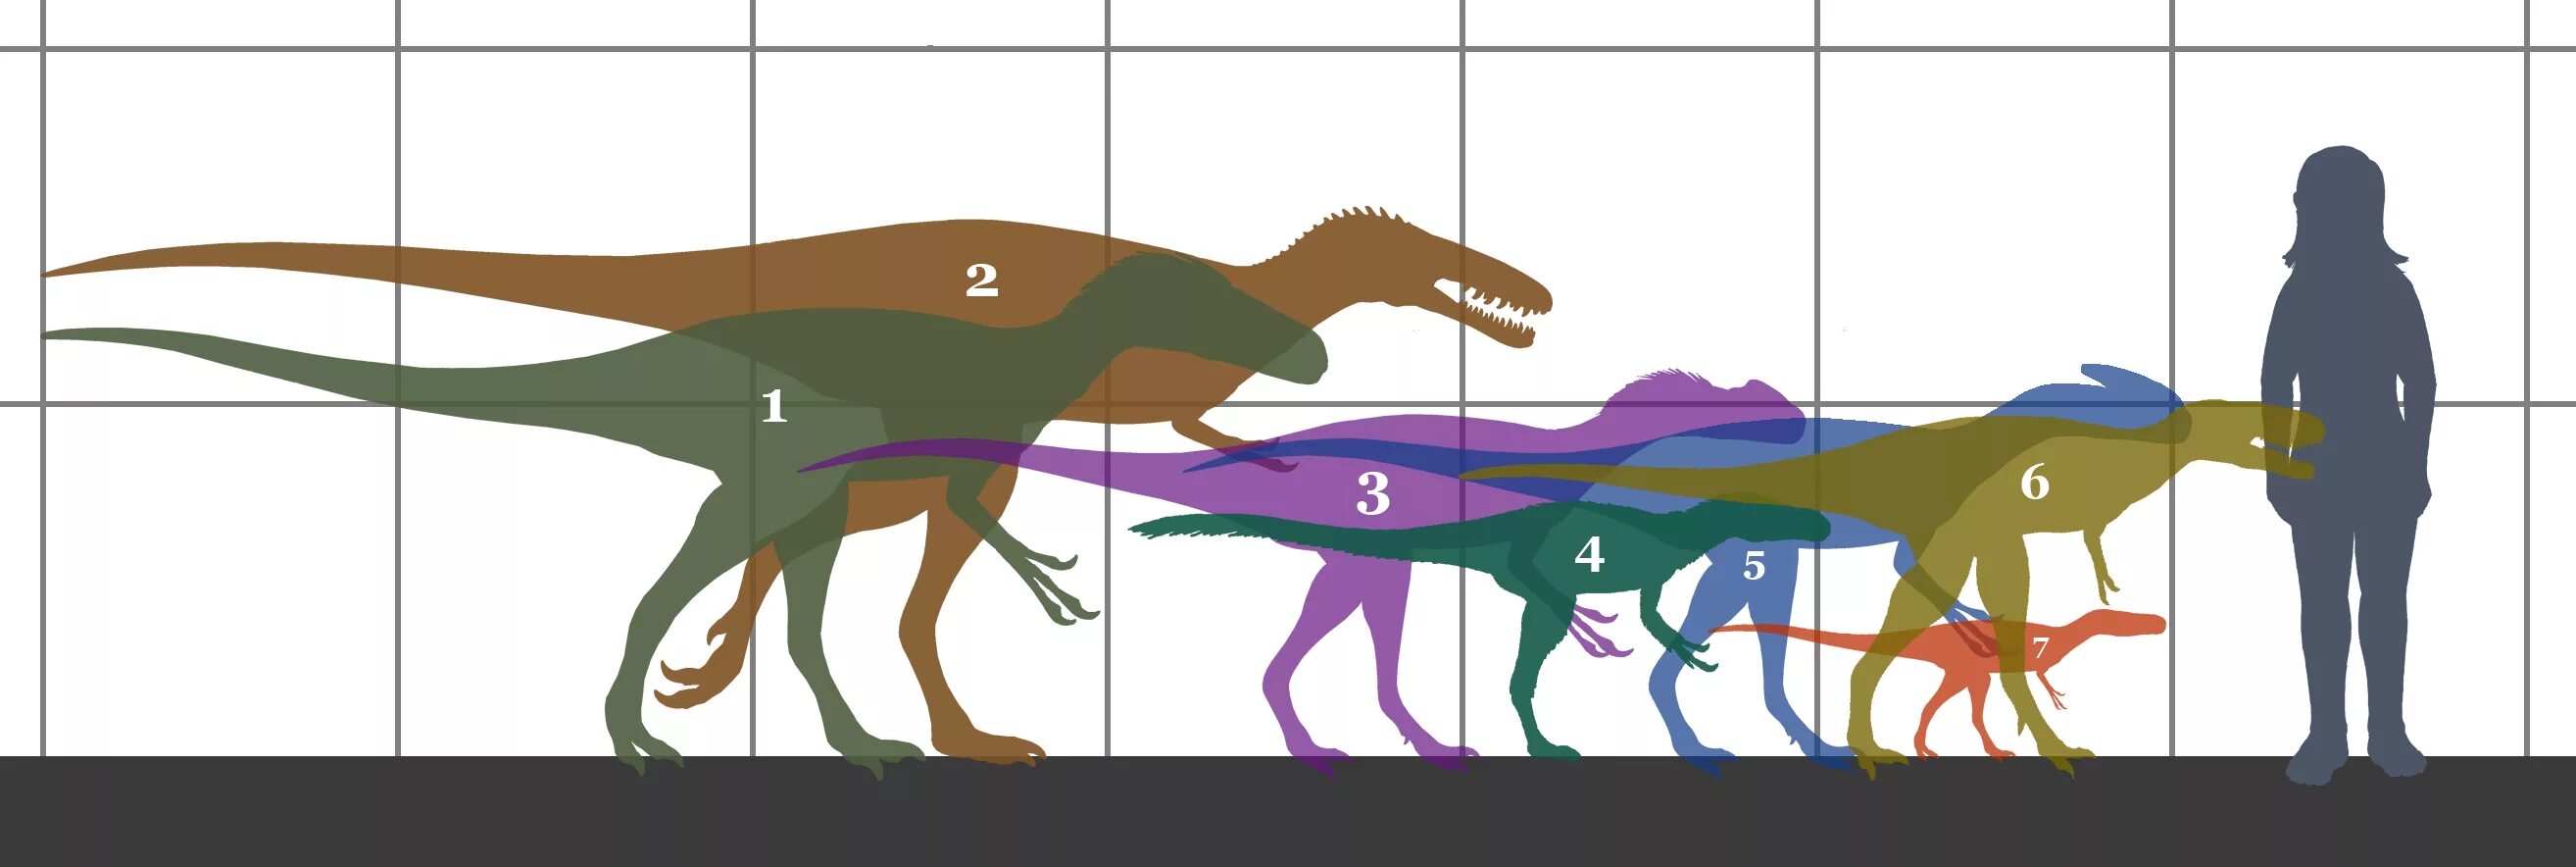 Сравнение динозавров. Тираннозавр тираннозавриды. Xiongguanlong динозавр. Исследование динозавров. Динозавры по сравнению с человеком.